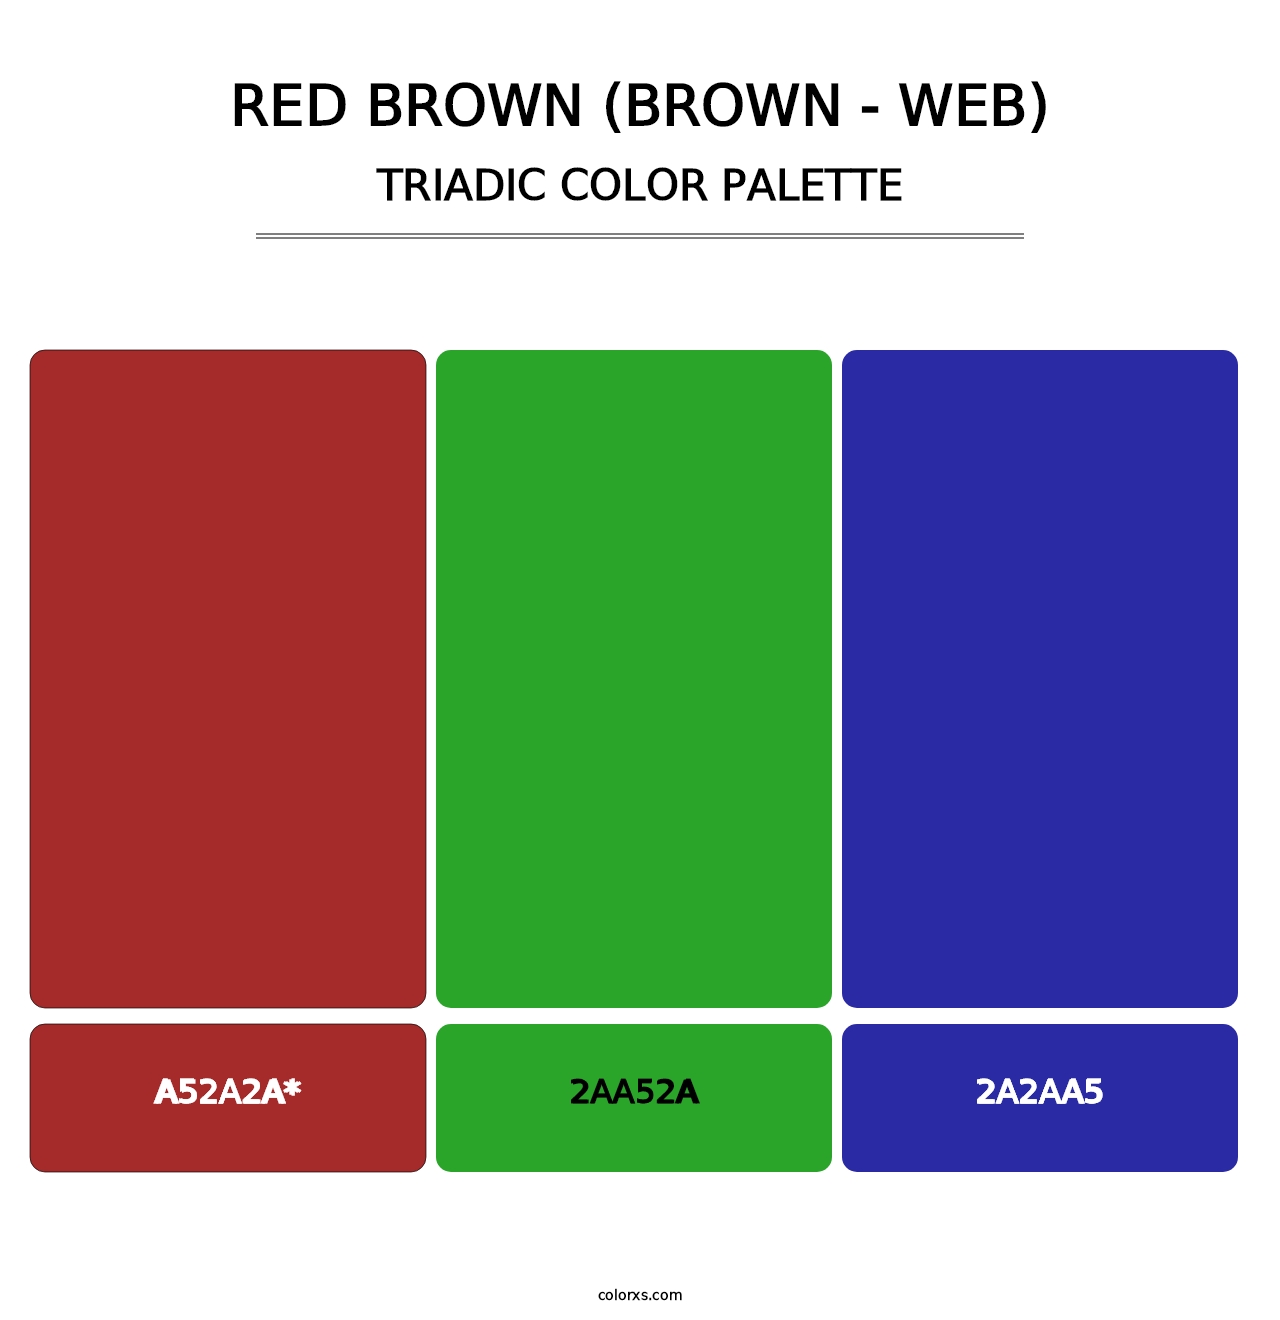 Red Brown (Brown - Web) - Triadic Color Palette